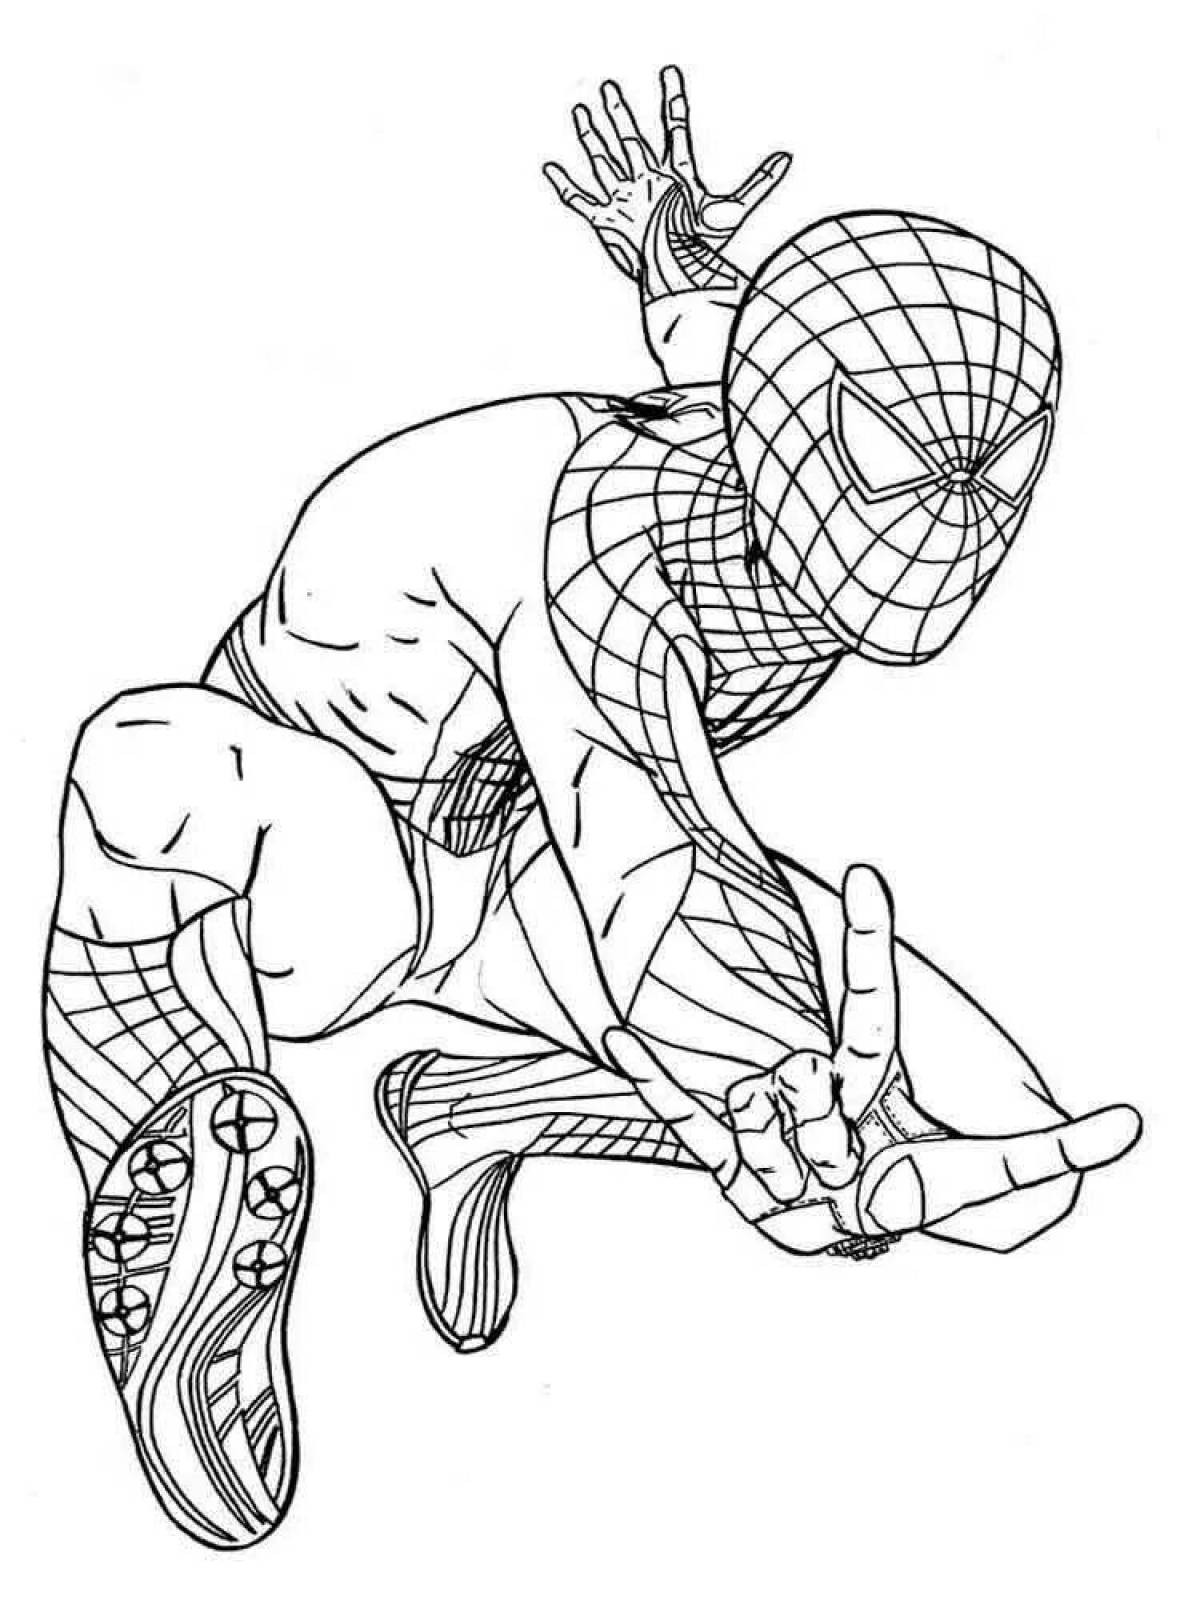 Exquisite spider-man coloring book